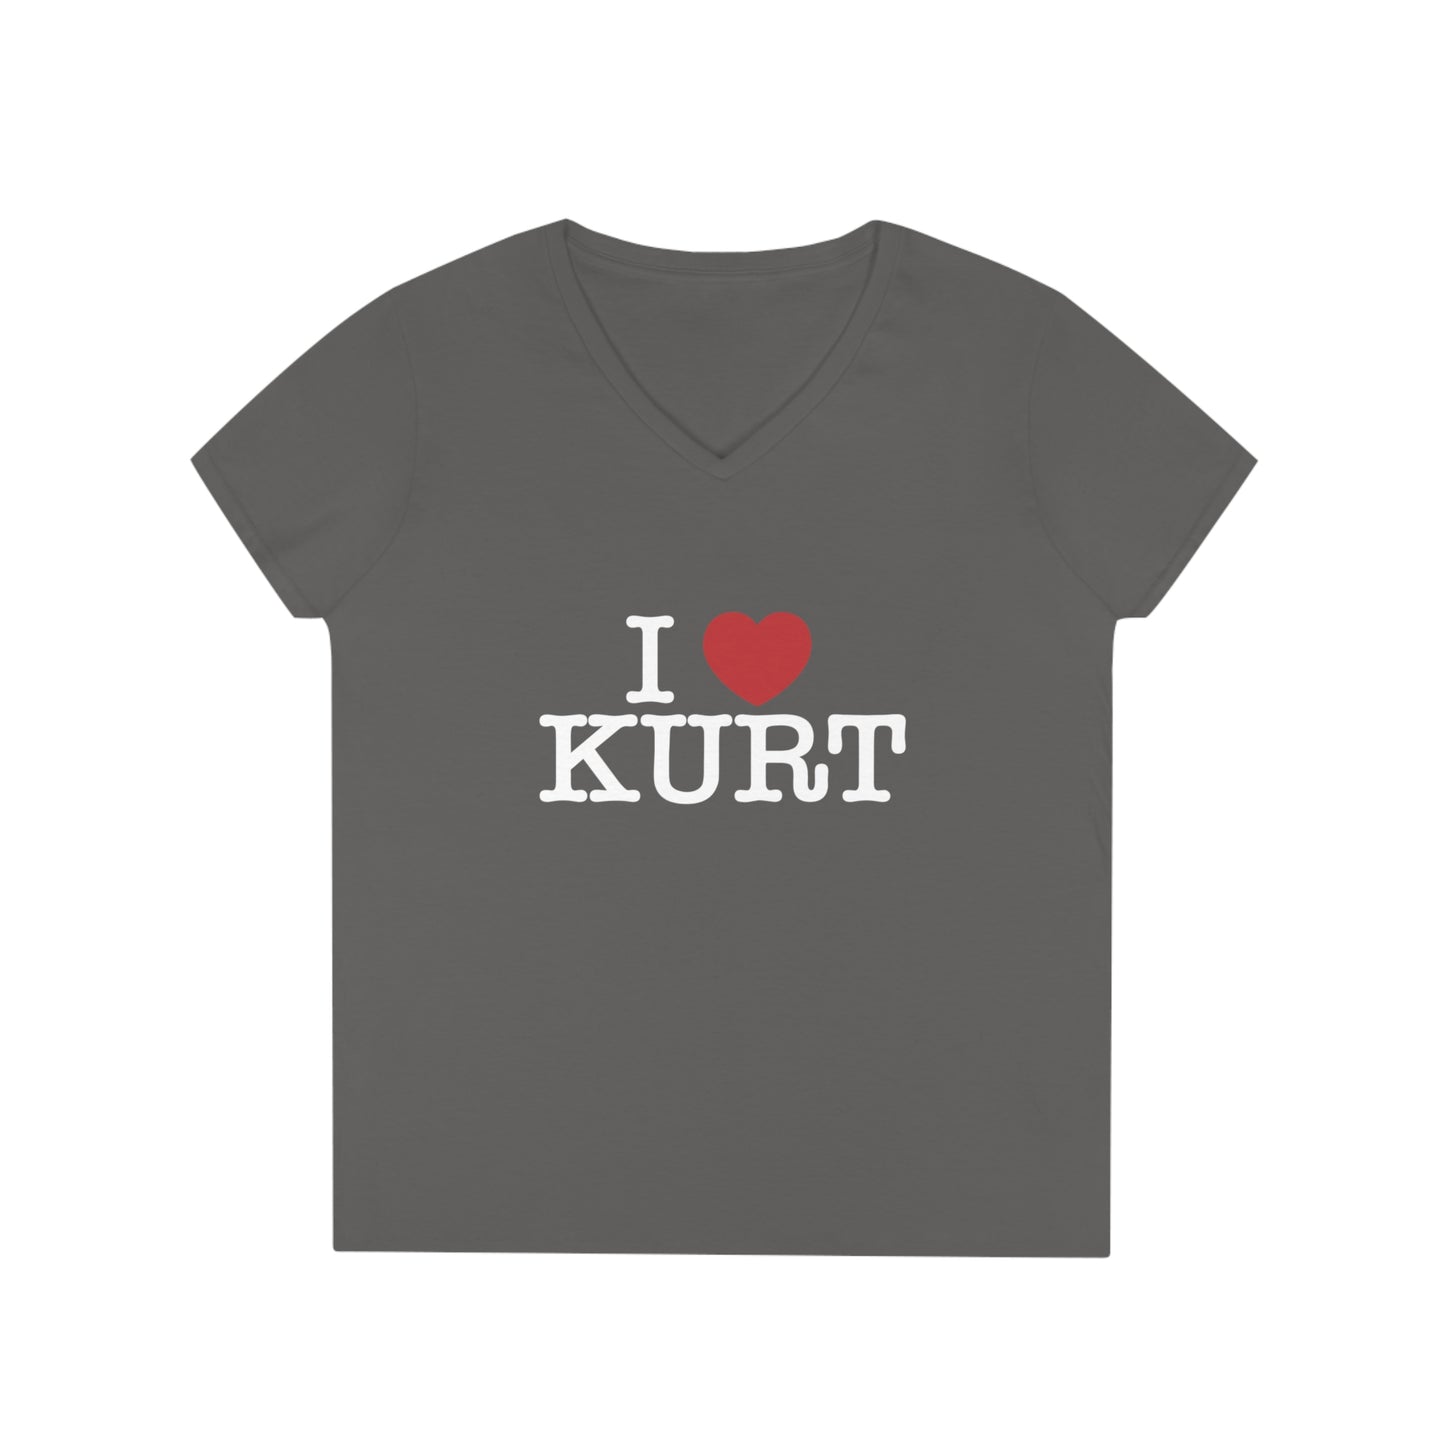 I Heart Kurt Ladies' V-Neck T-Shirt